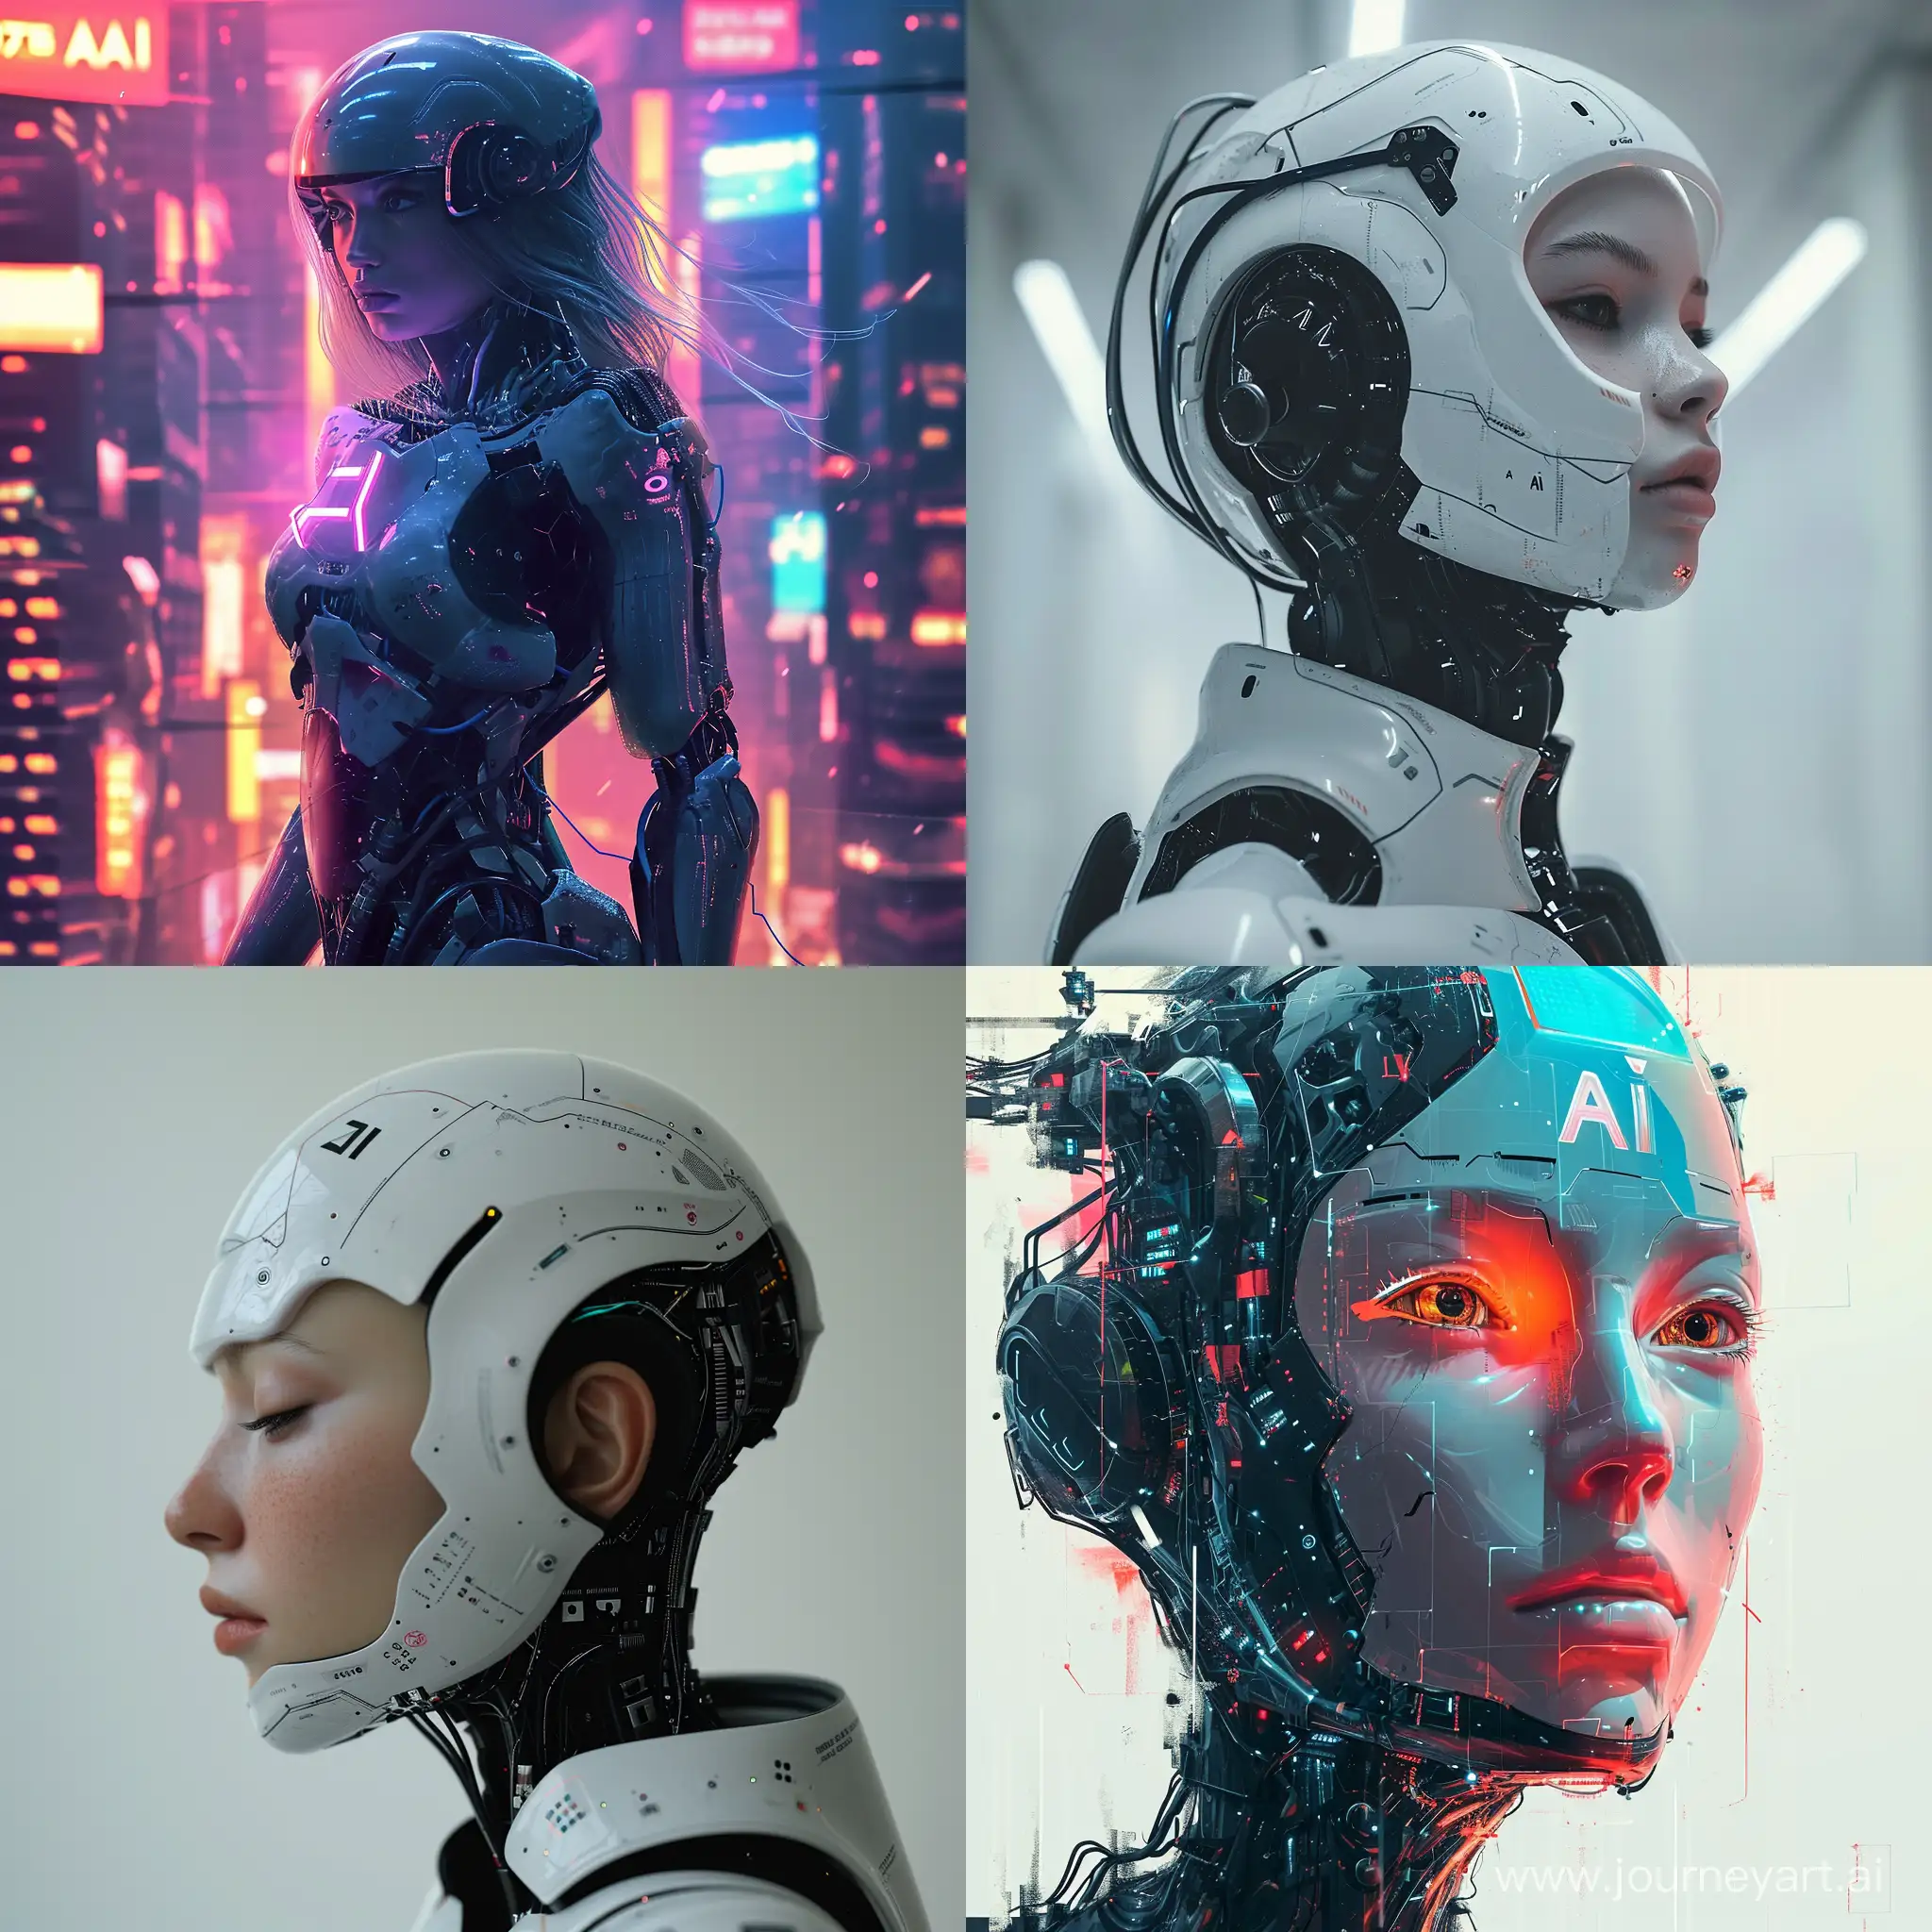 Futuristic-AI-Vision-with-Version-6-in-a-11-Aspect-Ratio